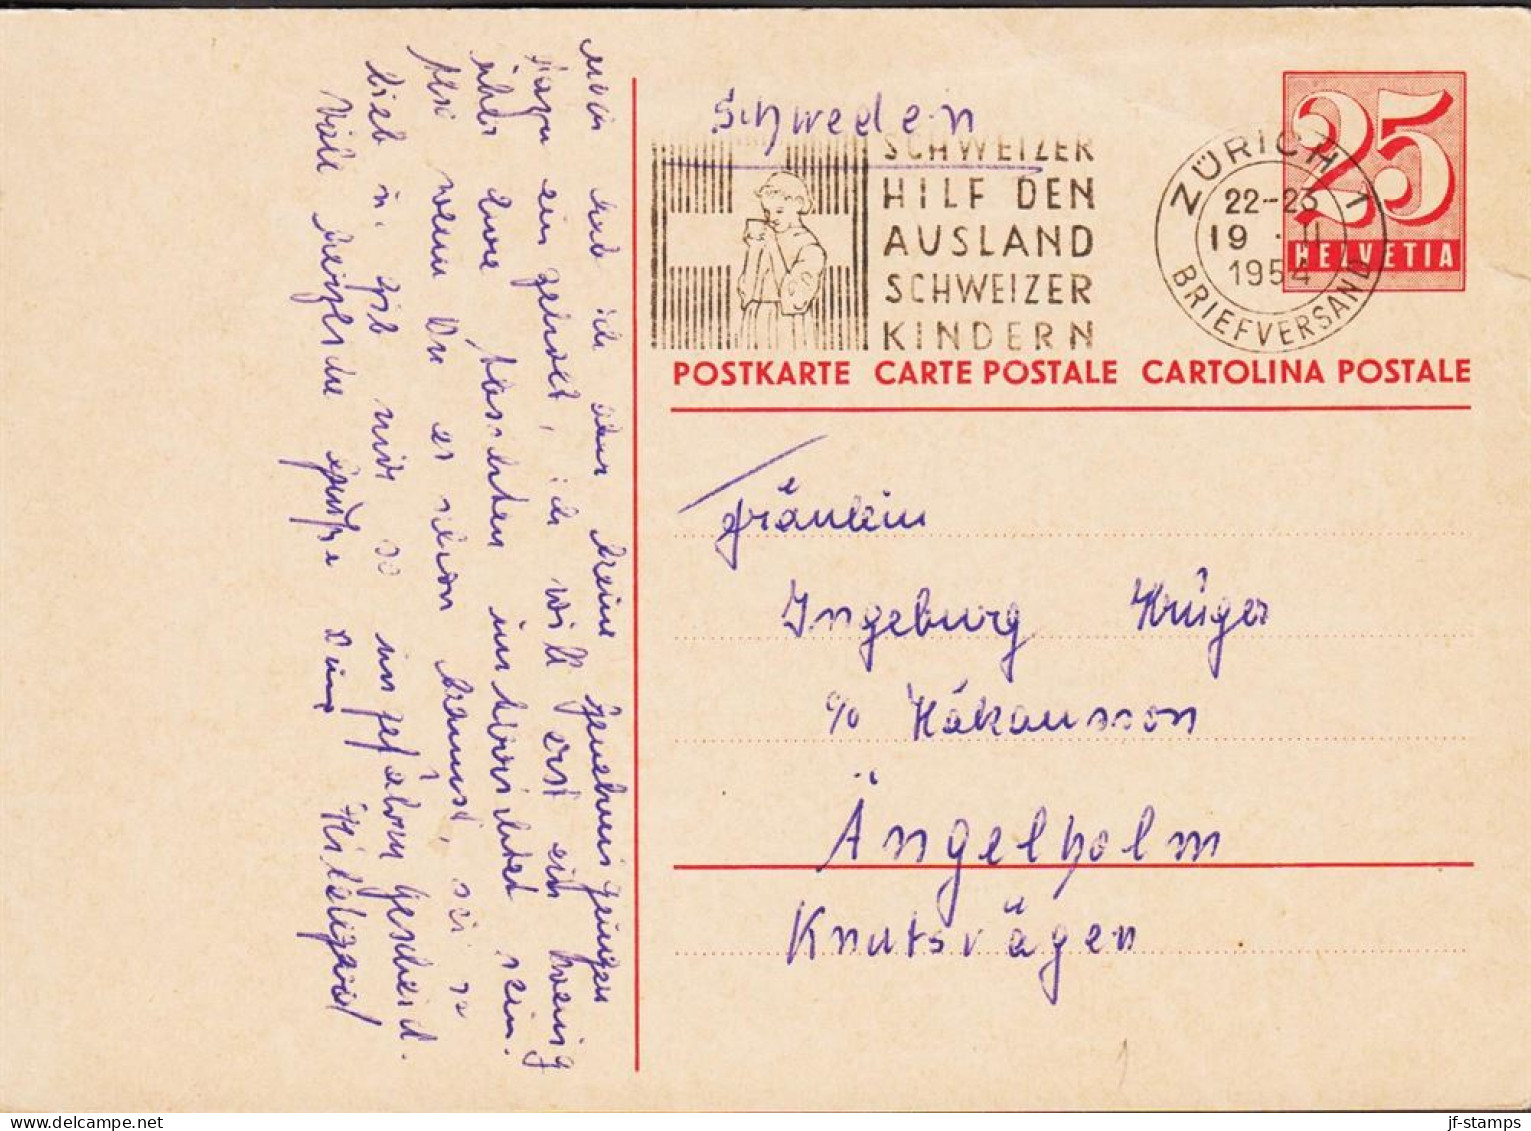 1954. SCHWEIZ HELVETIA. 25 C. CARTE POSTALE Cancelled With Slogan Cancel ZÜRICH 19 II 1954 SCHWEIZER HILF ... - JF545727 - Stamped Stationery